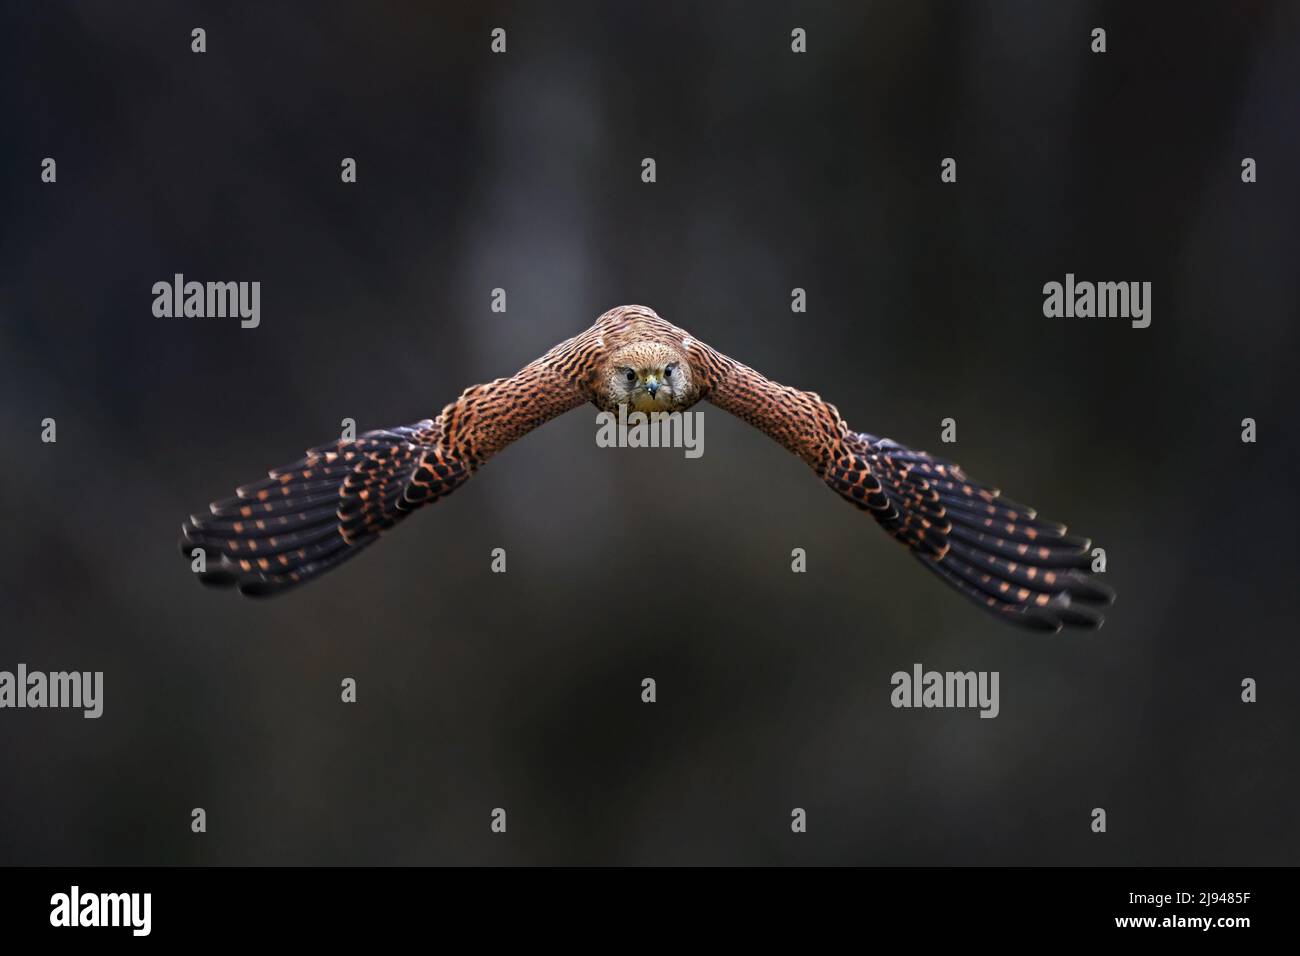 Die tschechische Tierwelt. Kestrel-Flug auf dem Ast mit Pilzen. Falco tinnunculus, kleiner Greifvogel im Naturgebiet, Tschechien. Wildtiere s Stockfoto